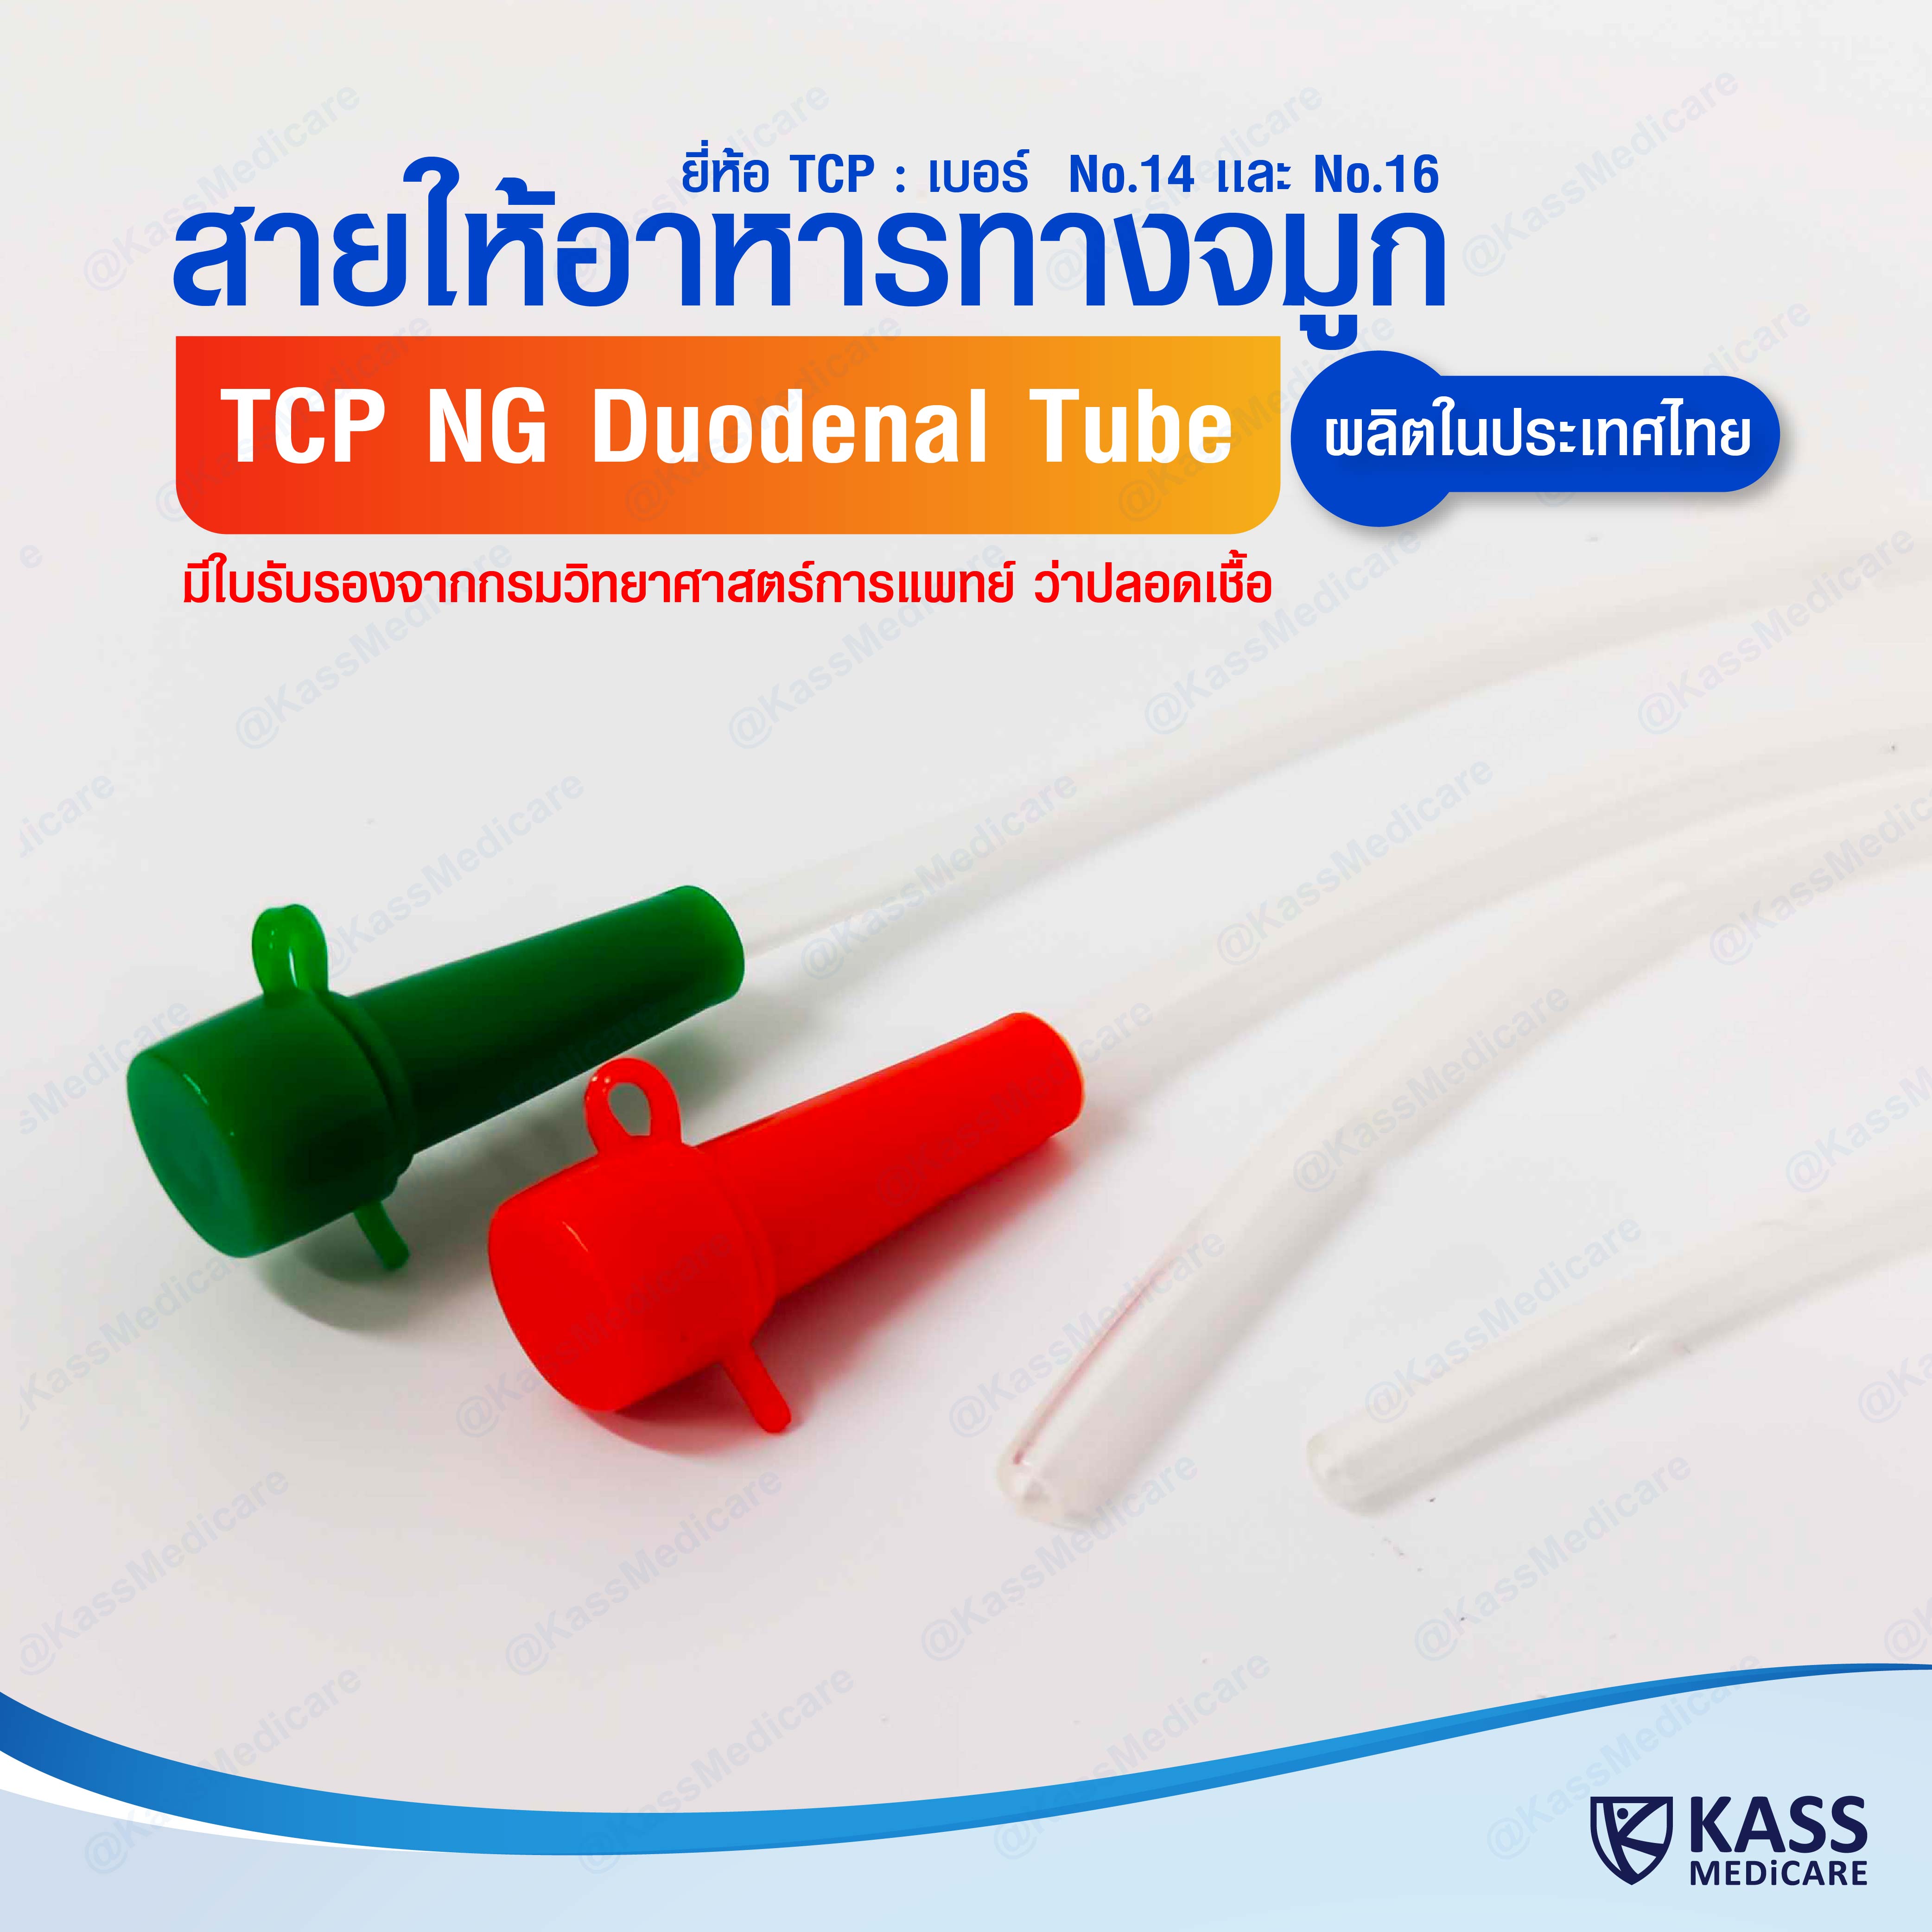 สายให้อาหารทางจมูก ขนาด no.14,16 NG Duodenal Tube (TCP Brand)